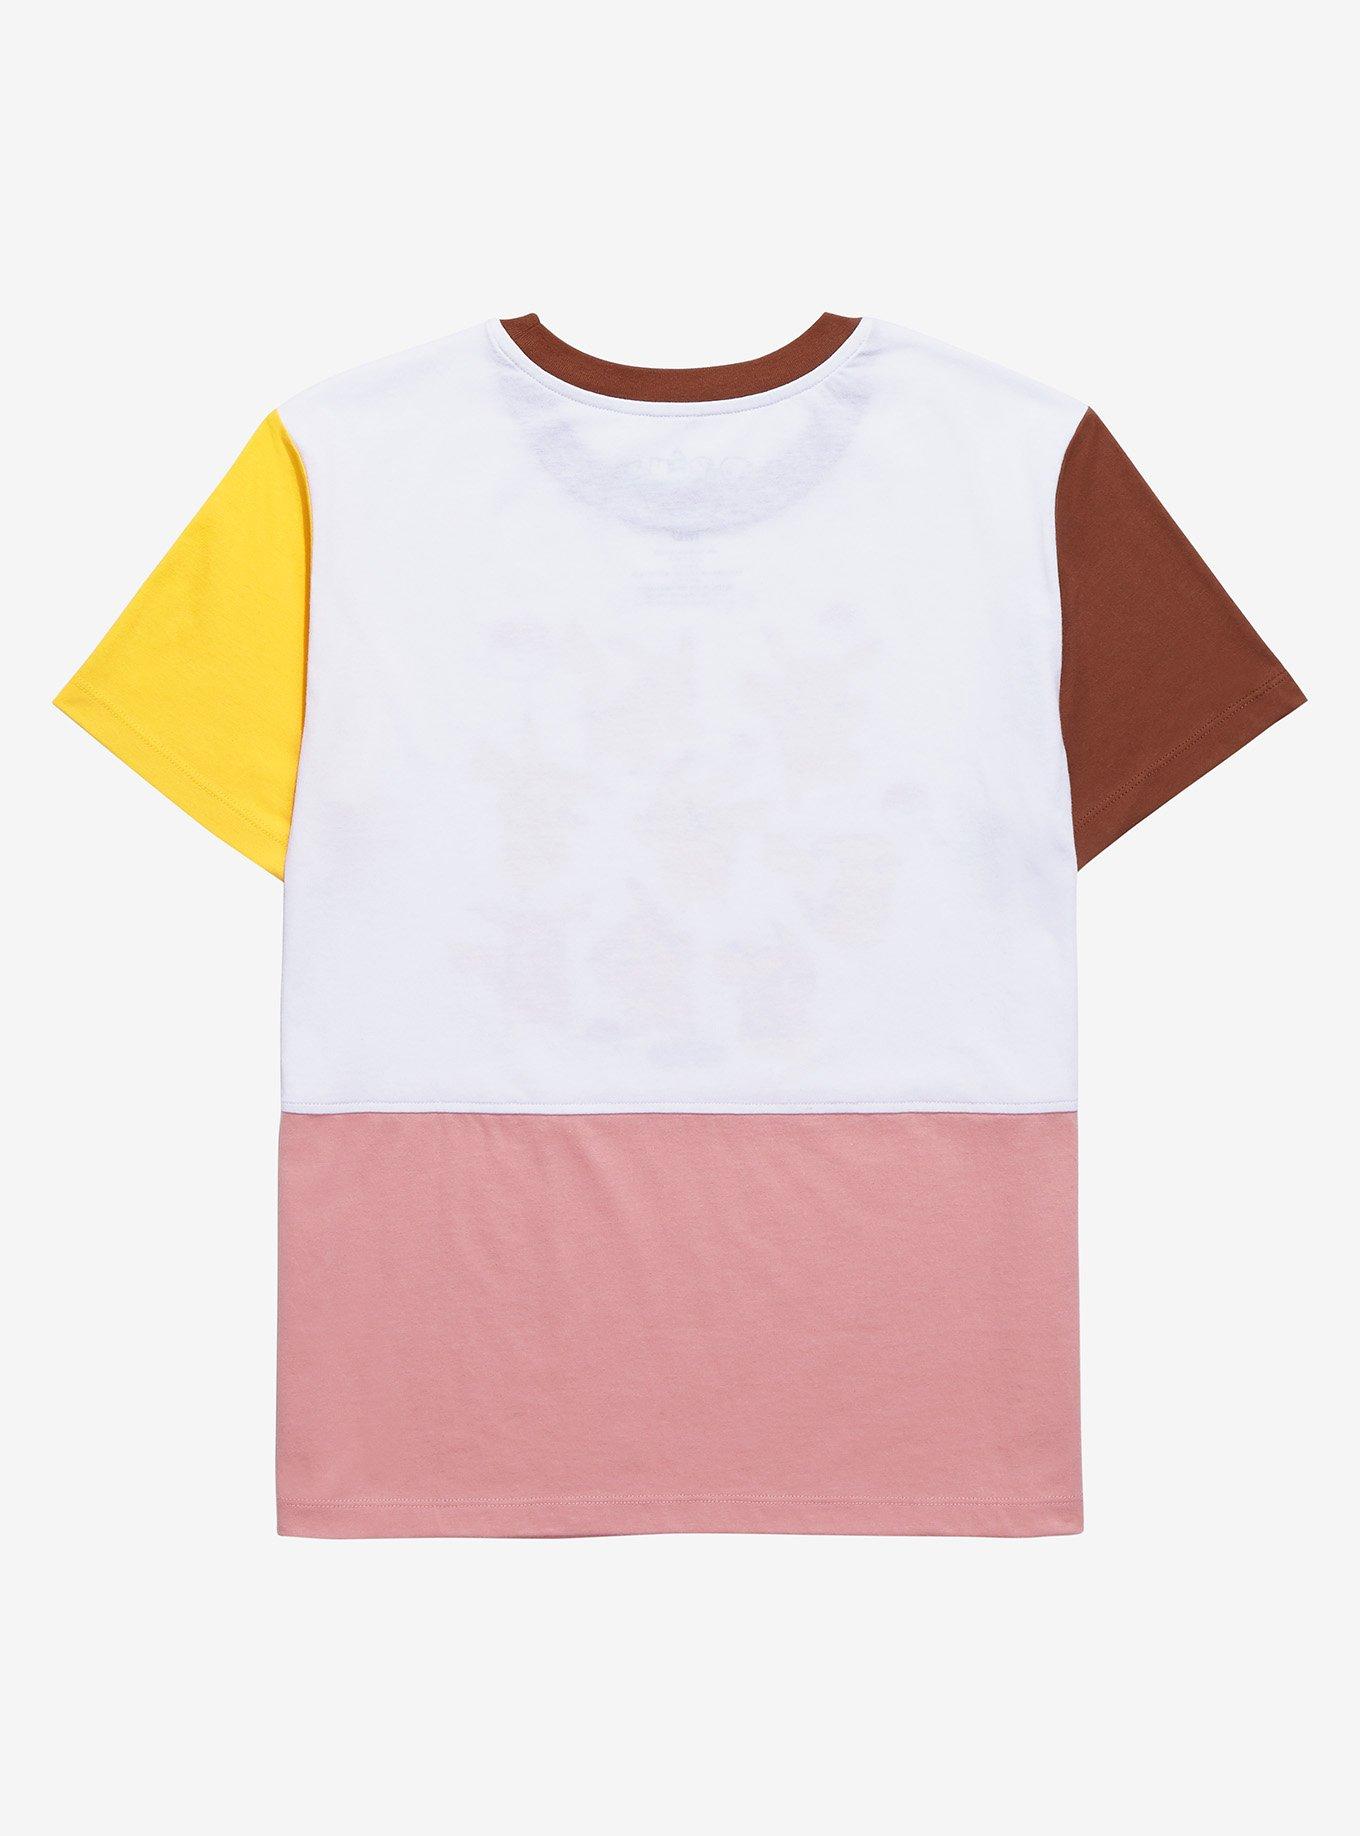 Pokémon Pikachu Color Block Women's T-Shirt - BoxLunch Exclusive, MULTI, alternate